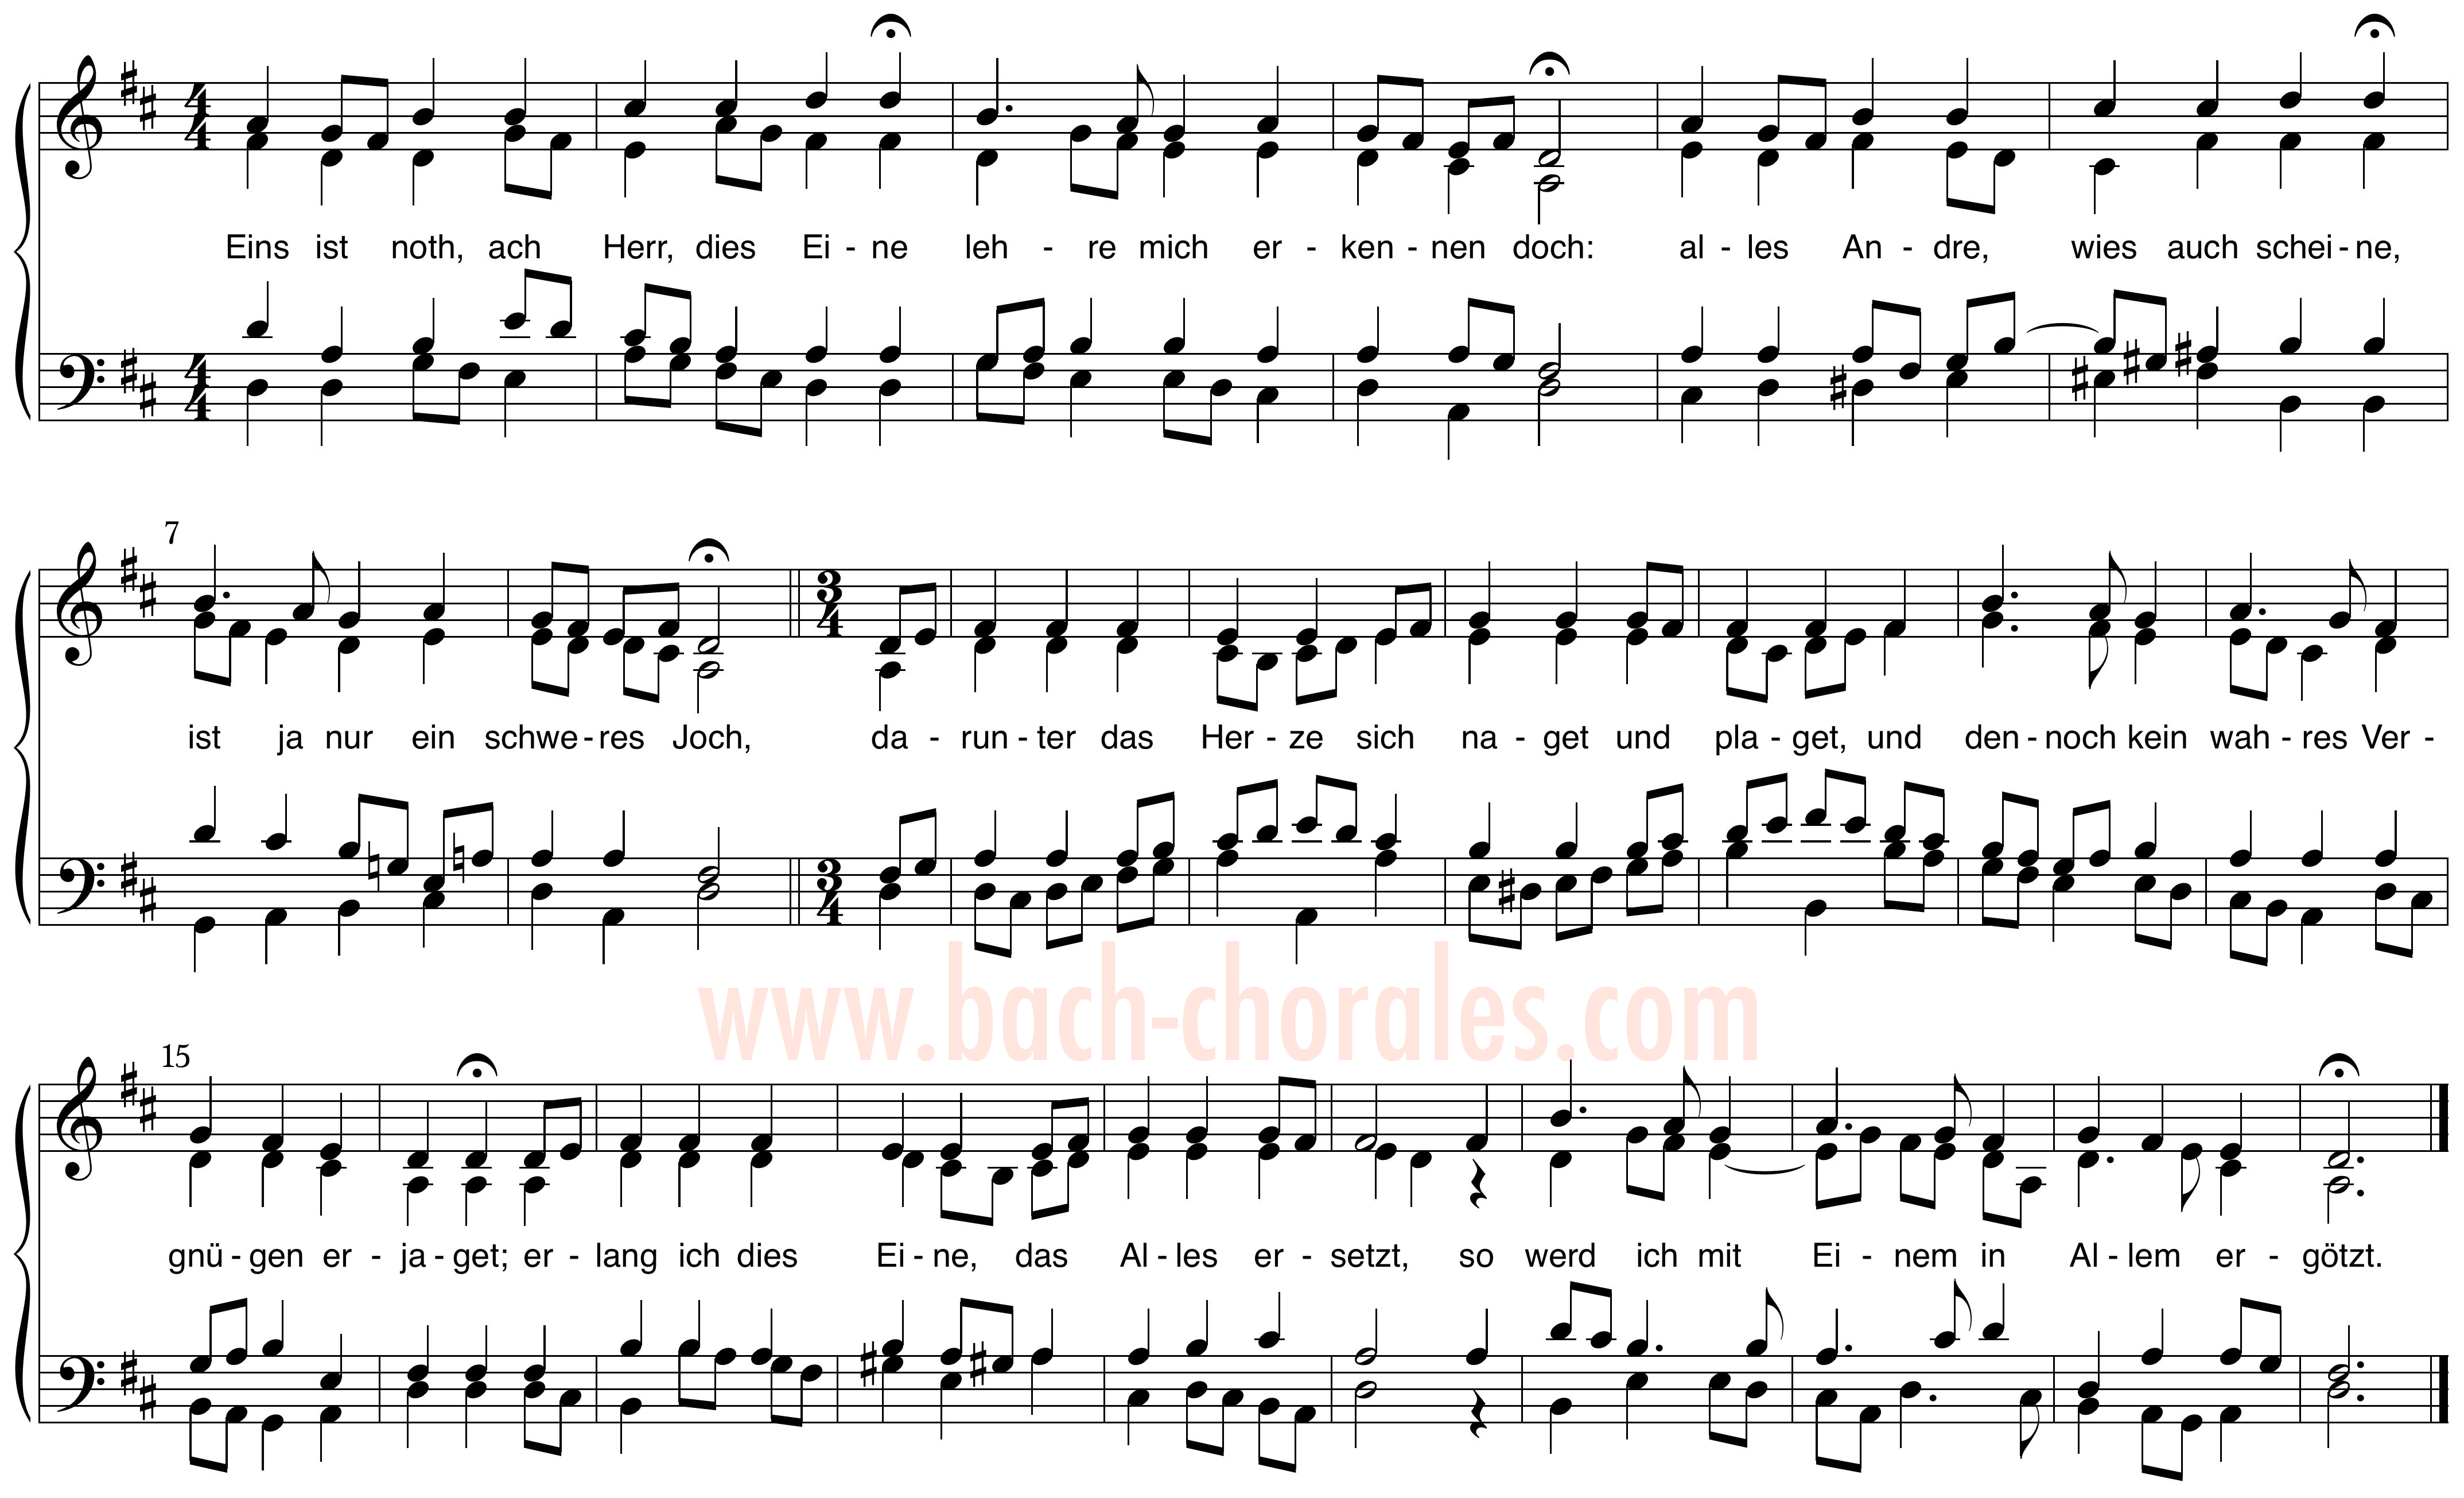 notenbeeld BWV 304 op https://www.bach-chorales.com/